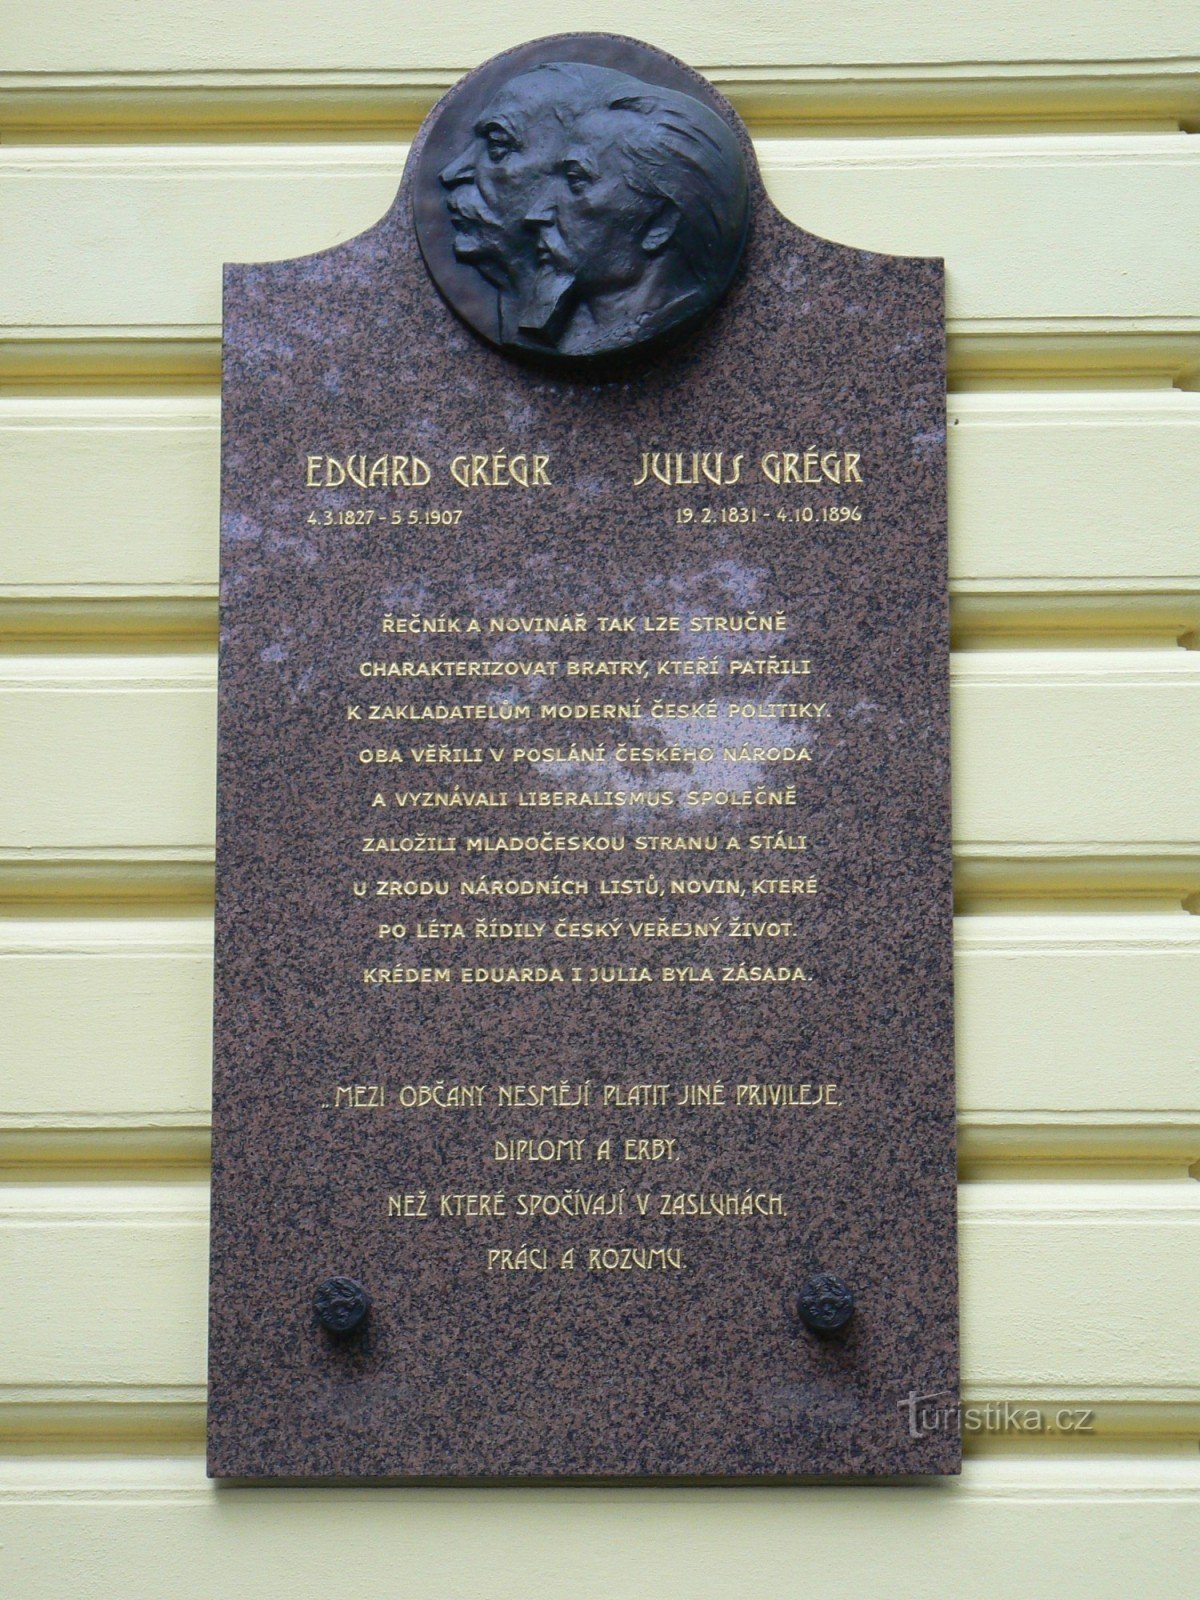 Placa memorial Eduard e Julius Grégr